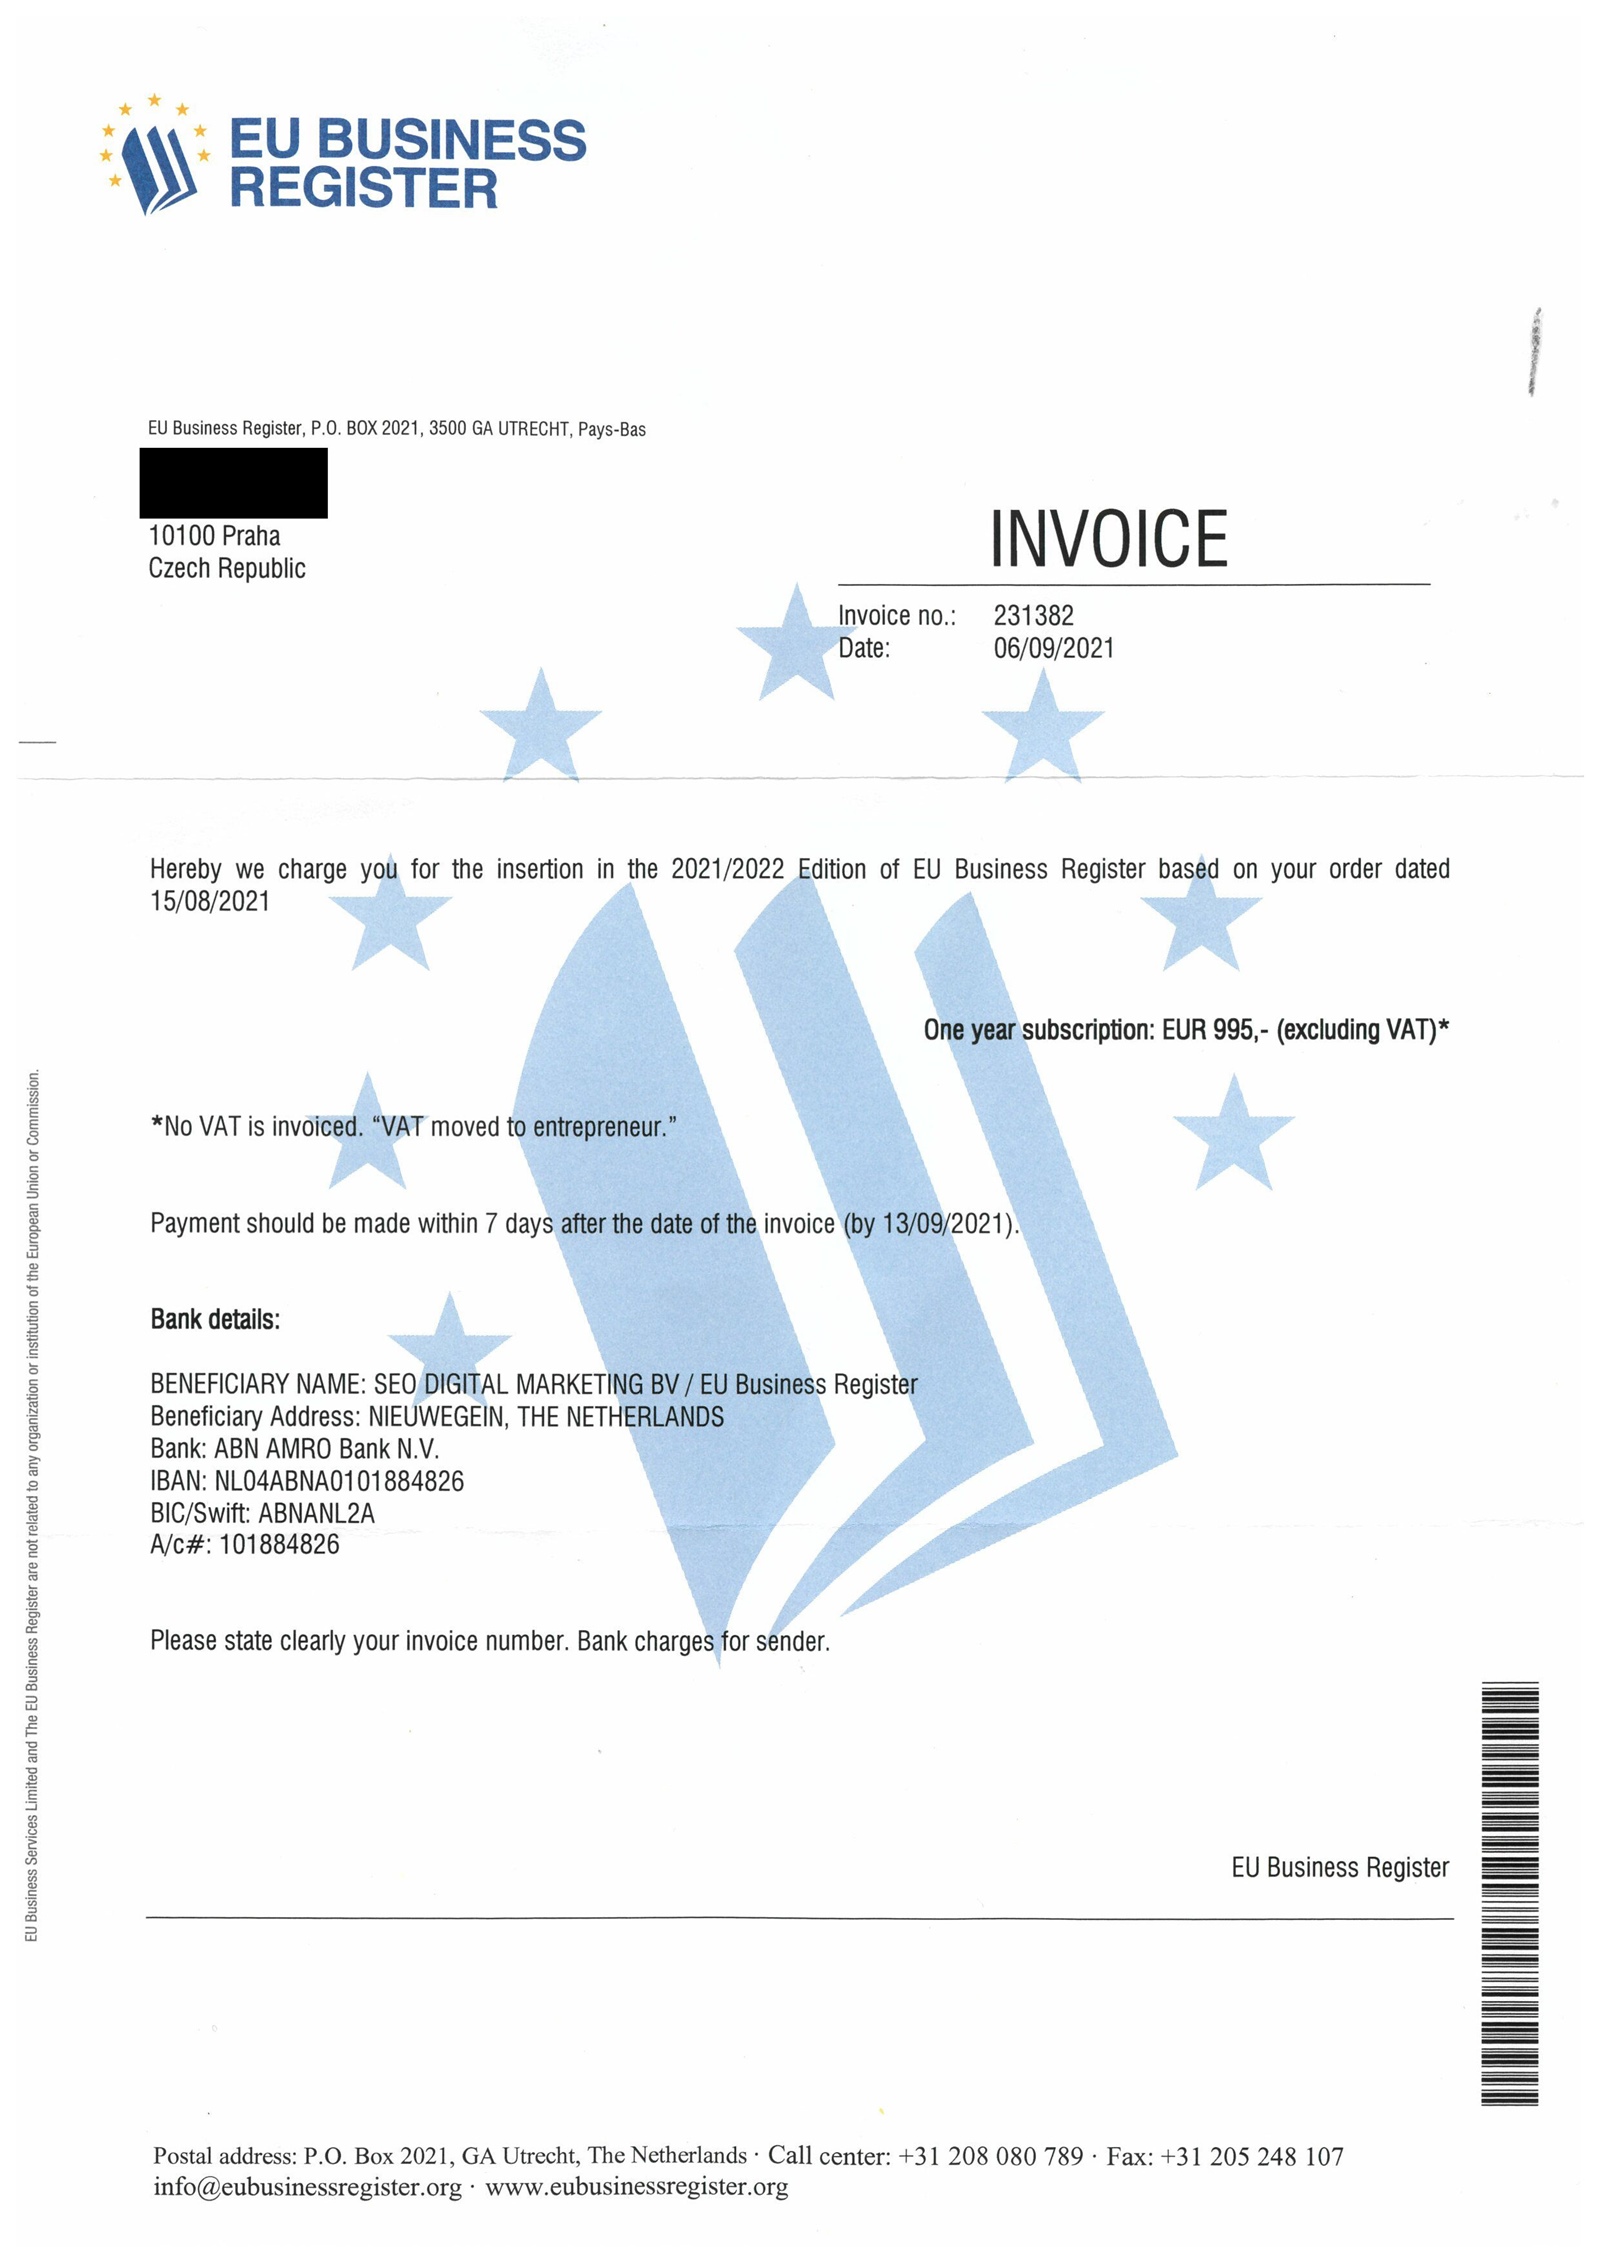 Spam “EU Business Register” : que se passe-t-il si vous ne payez pas ?